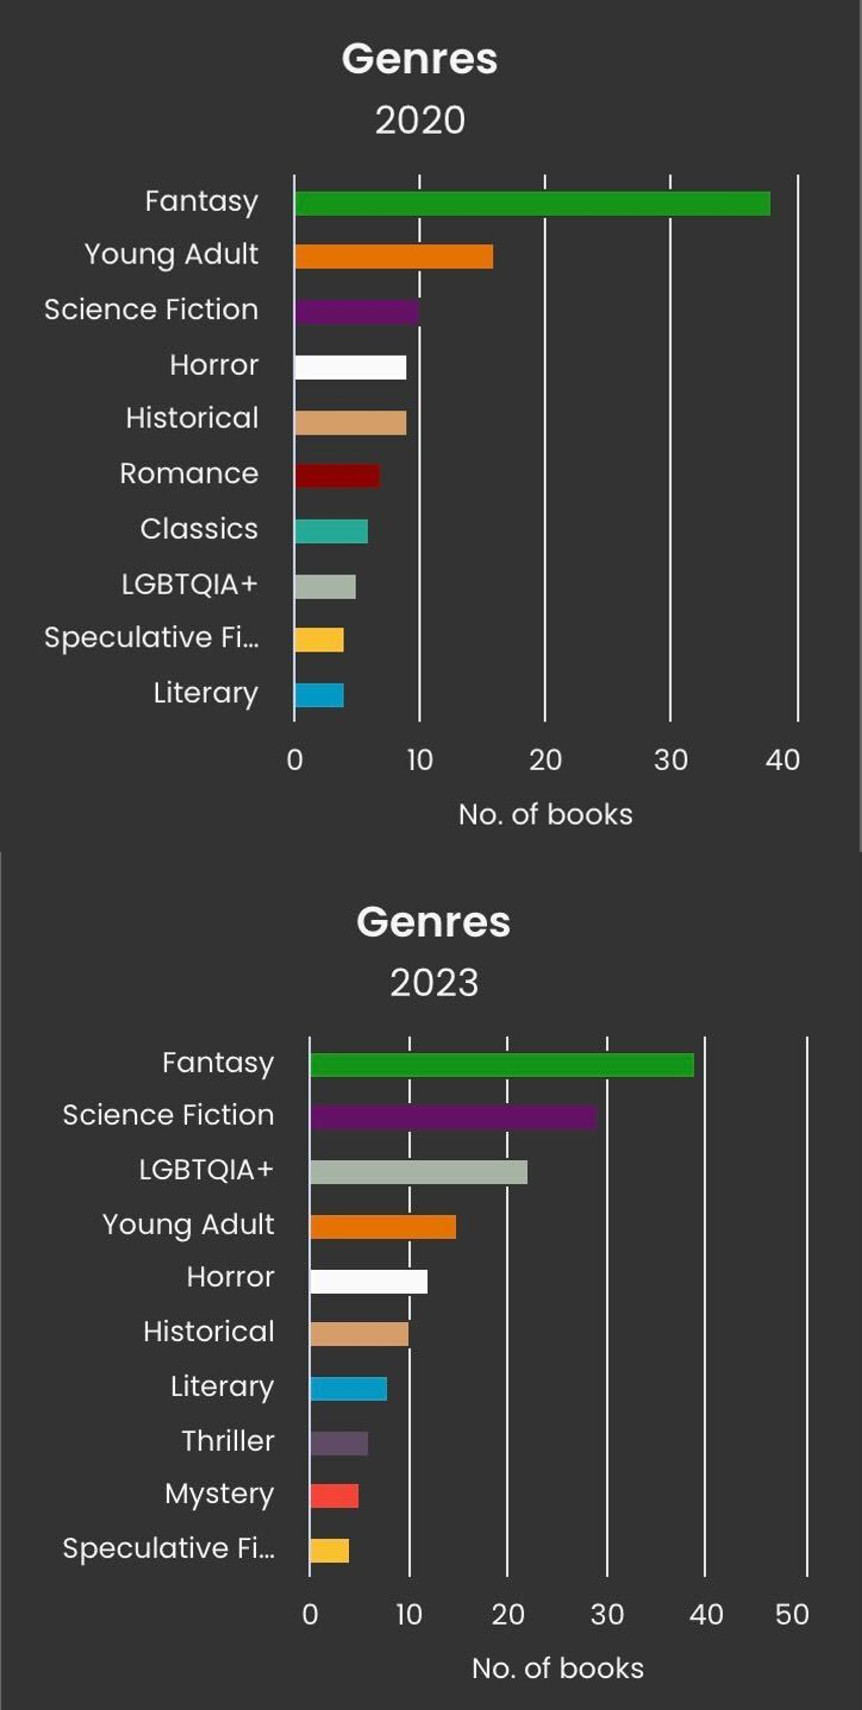 StoryGraph کا ایک اسکرین شاٹ جس میں دو بار گراف لگائے گئے ہیں۔ سب سے اوپر 2020 میں پڑھی جانے والی کتابوں کی انواع کے لیے ہے، جس میں فنتاسی کے بعد نوجوان بالغ ہیں۔ سب سے نیچے 2023 میں پڑھی جانے والی کتابوں کی انواع کے لیے ہے، جس میں سب سے اوپر فنتاسی ہے اور اس کے بعد سائنس فائی ہے۔